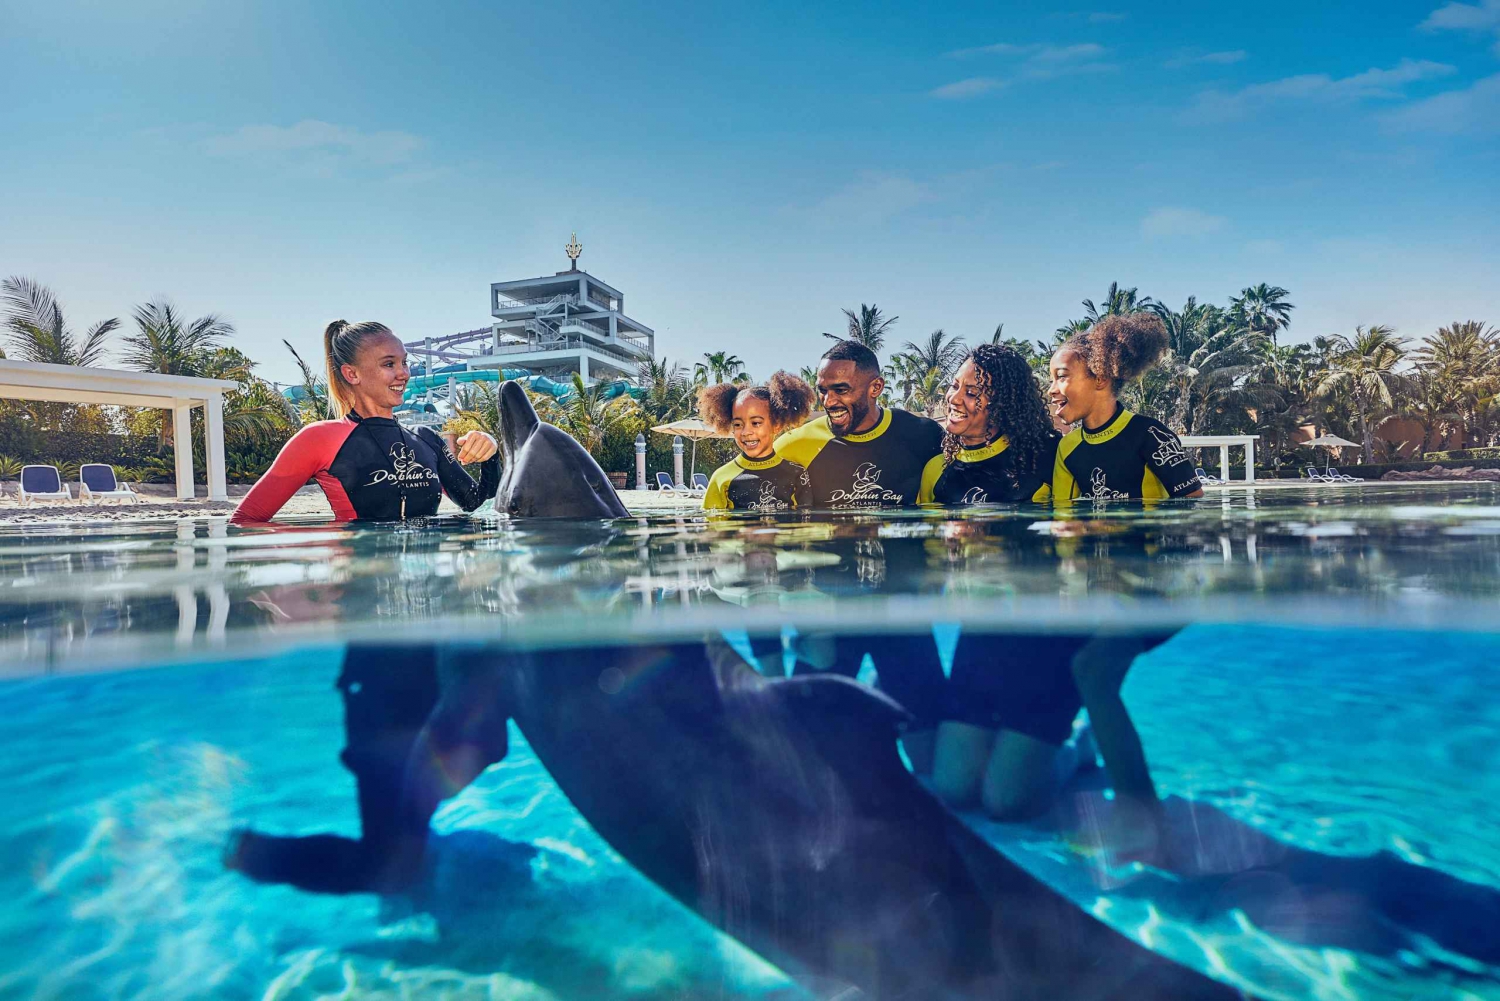 Dubai: Biljett till Dolphin Encounter och vattenparken Aquaventure